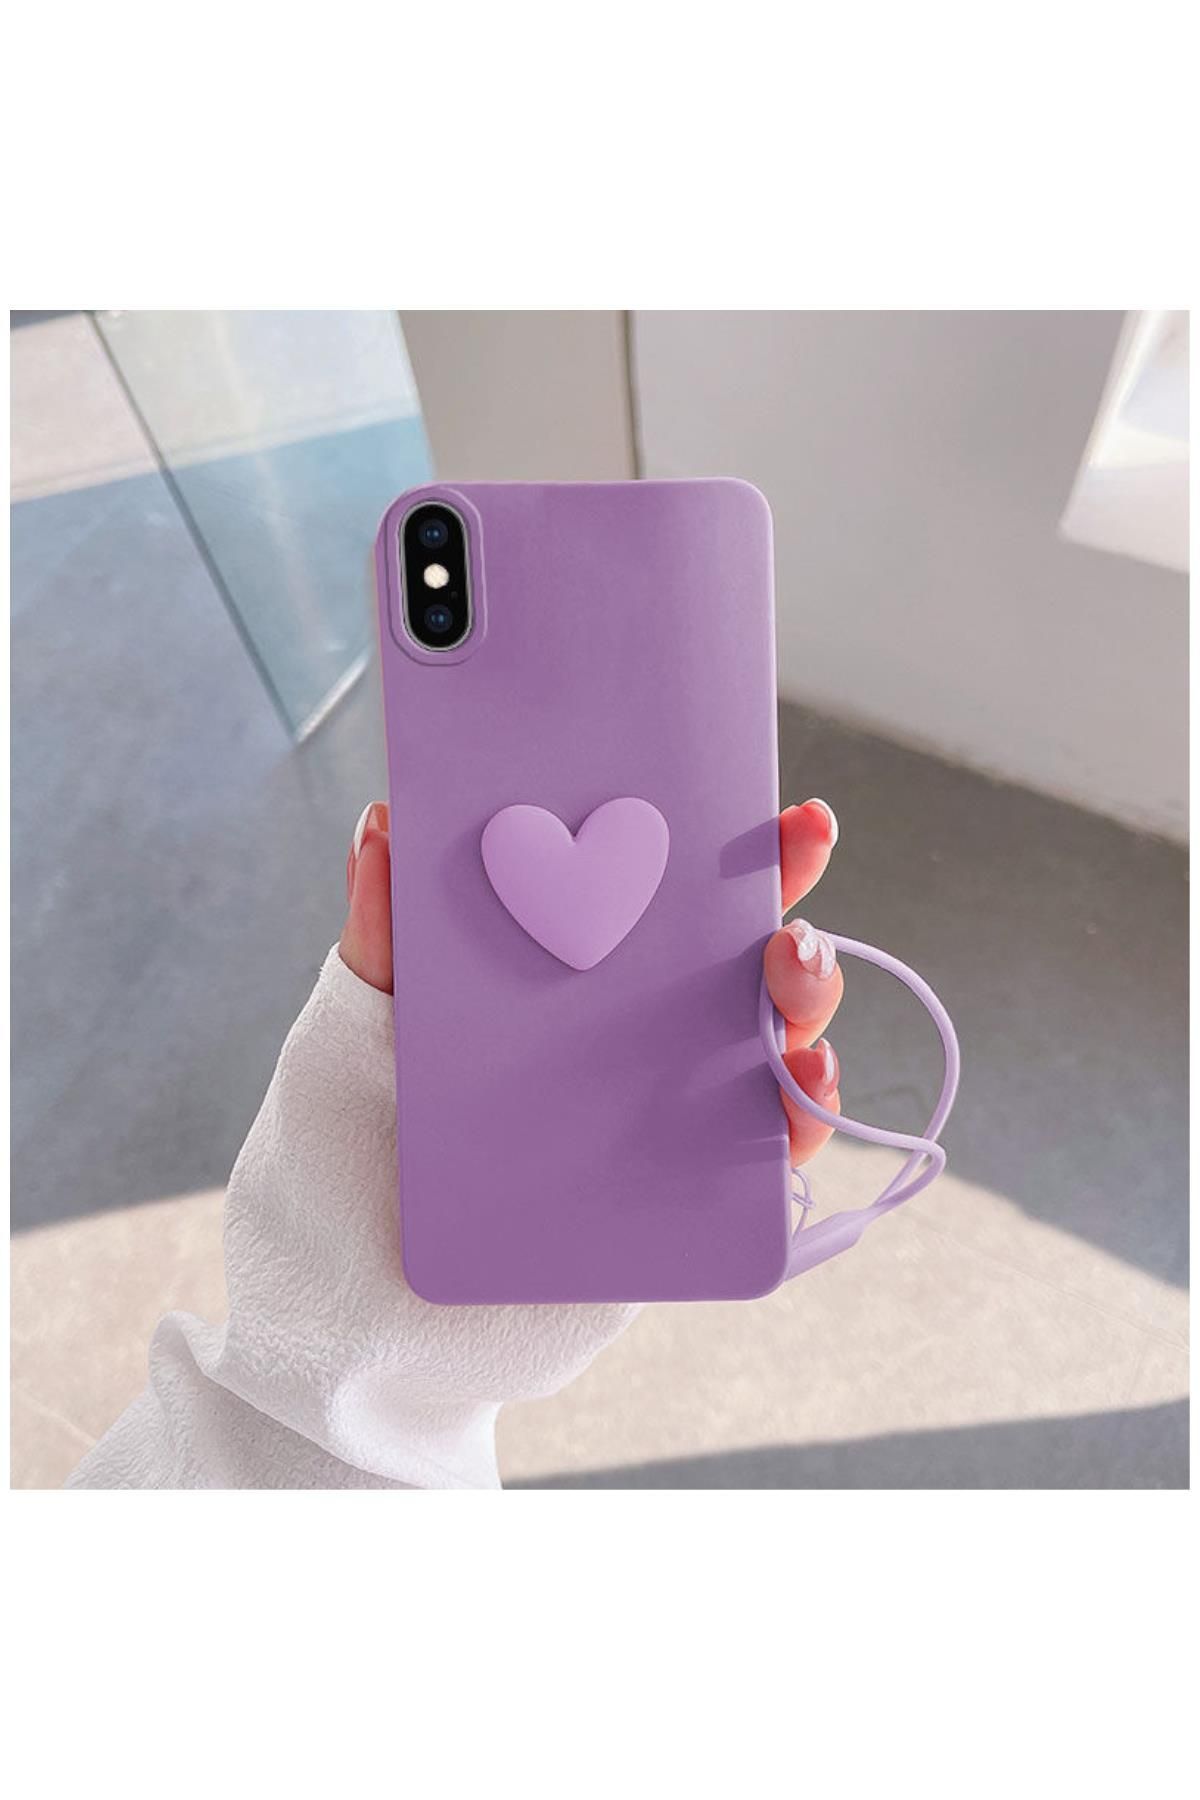 Zebana Apple Iphone Xs Max Uyumlu Kılıf Kalpli Love Silikon Kılıf Lila